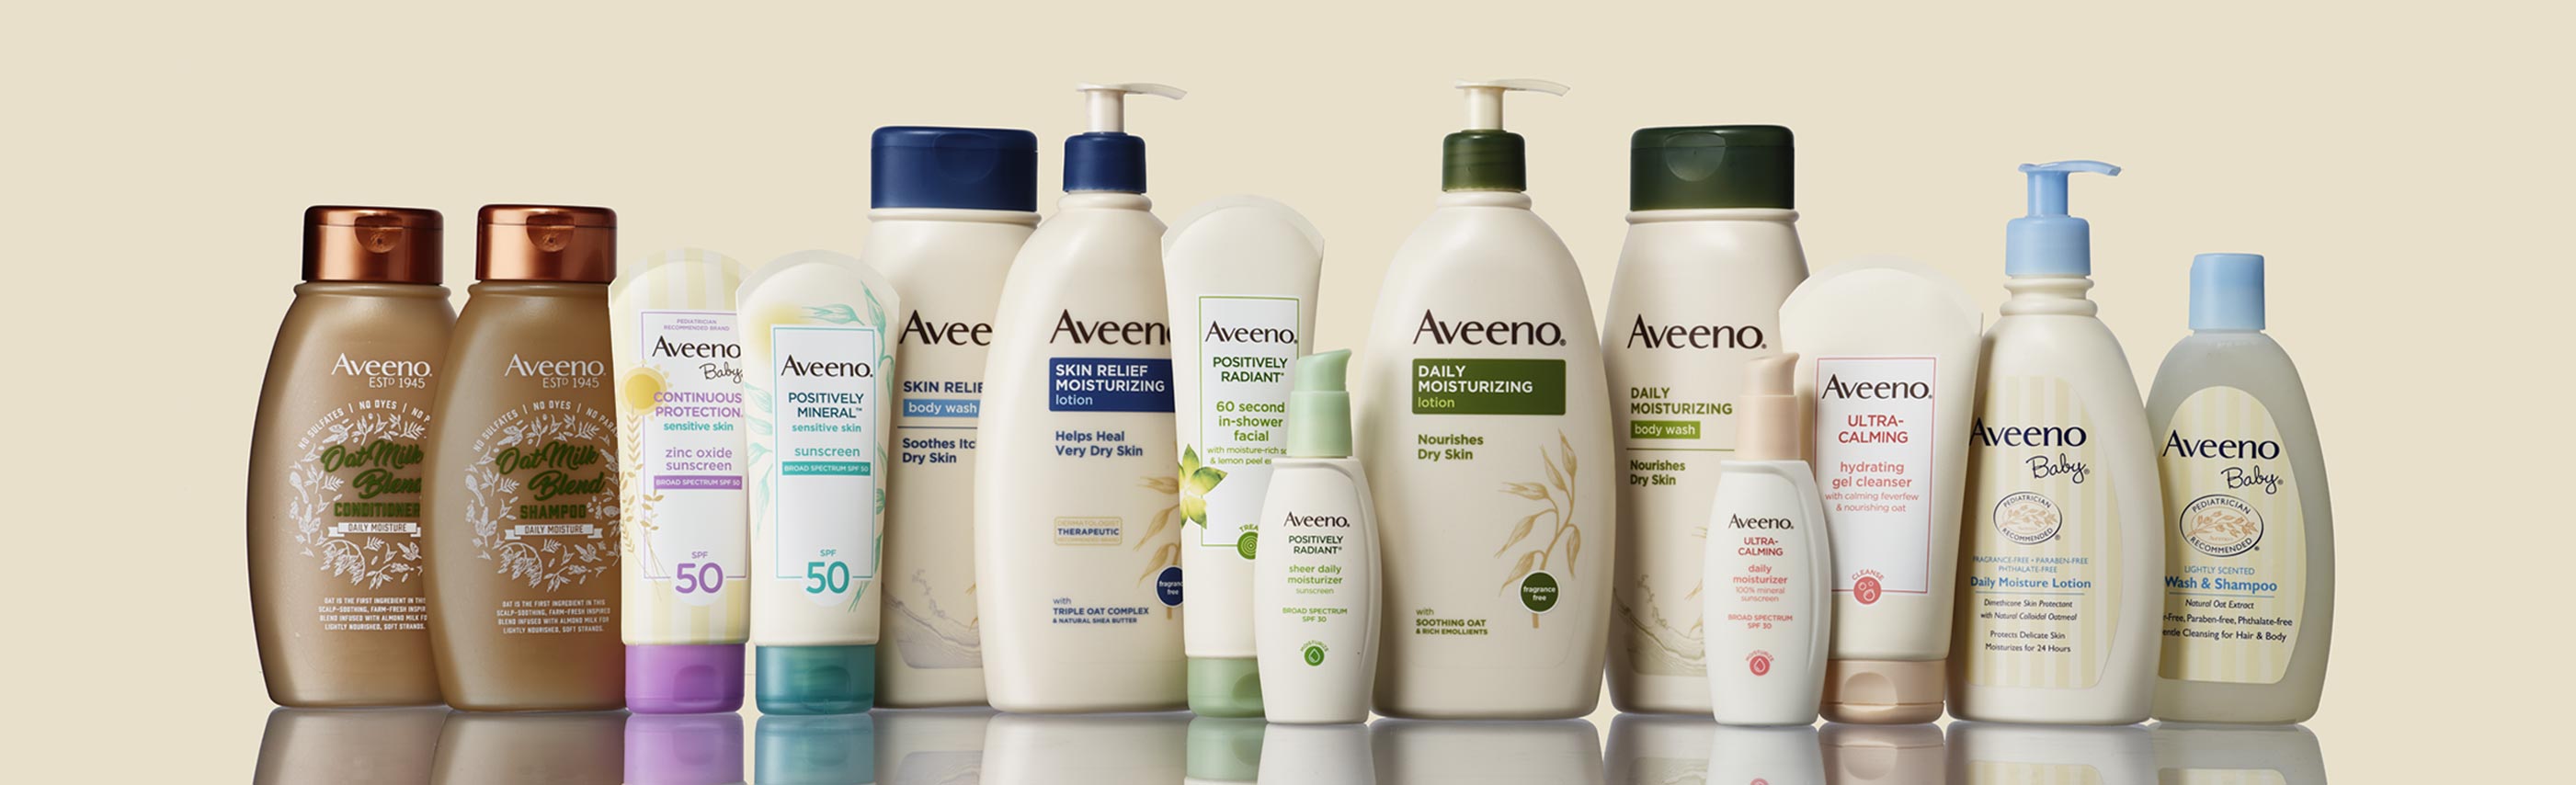 Productos Aveeno en línea con pantalla solar, cuidado del cabello, loción skin relief, positively radiant, ultra-calming y baby 